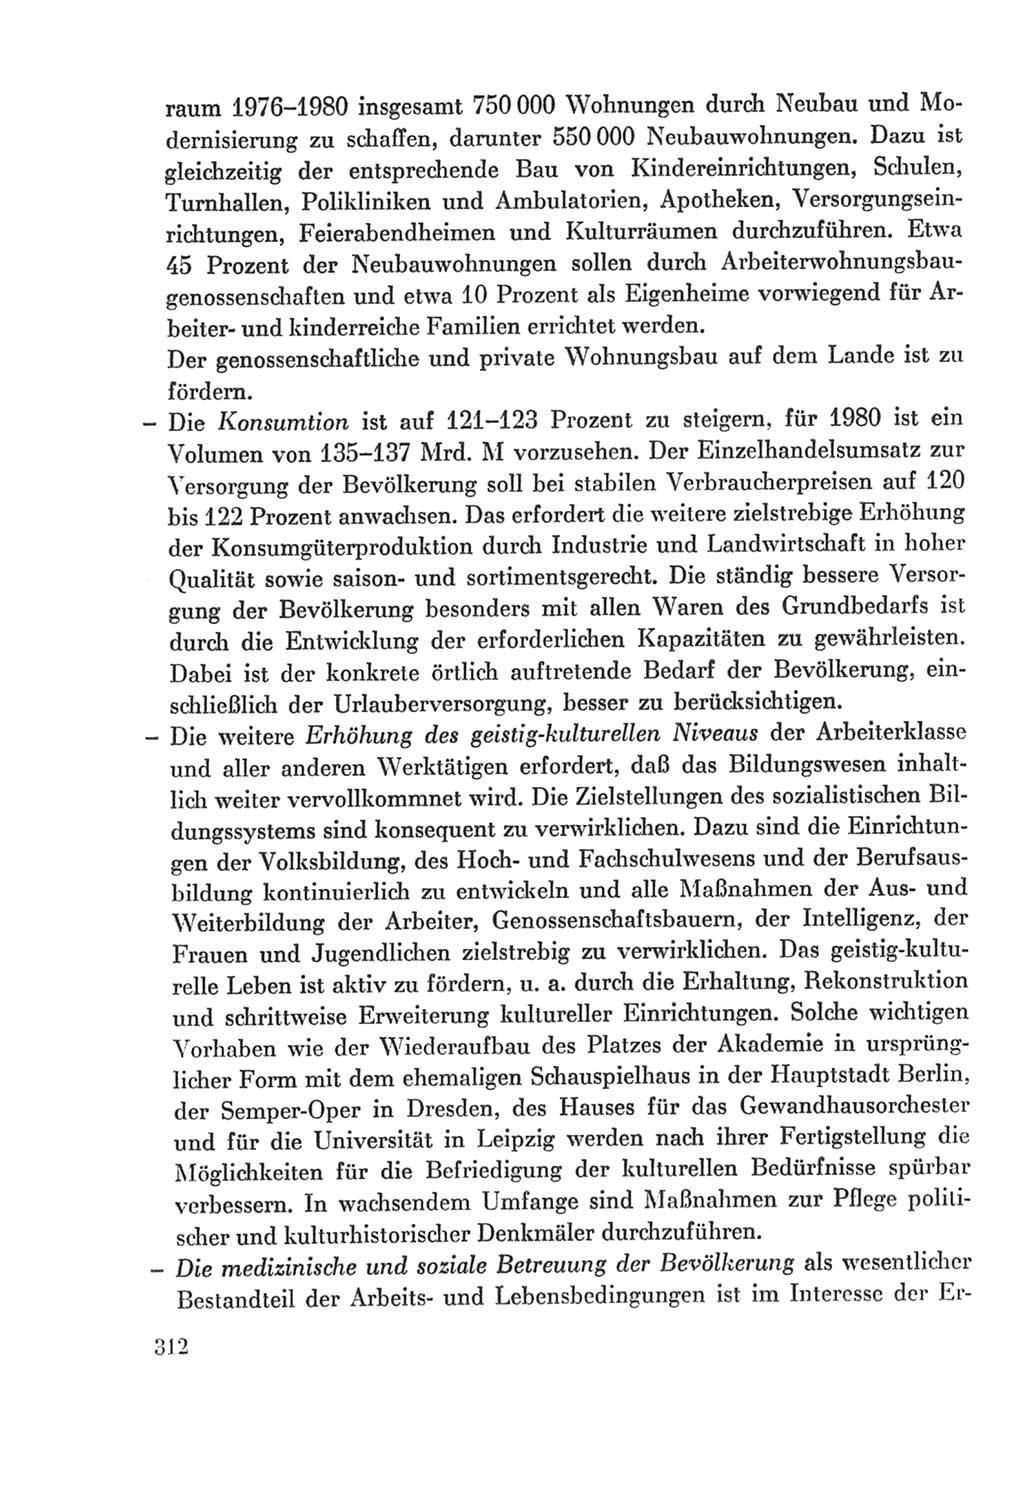 Protokoll der Verhandlungen des Ⅸ. Parteitages der Sozialistischen Einheitspartei Deutschlands (SED) [Deutsche Demokratische Republik (DDR)] 1976, Band 2, Seite 312 (Prot. Verh. Ⅸ. PT SED DDR 1976, Bd. 2, S. 312)